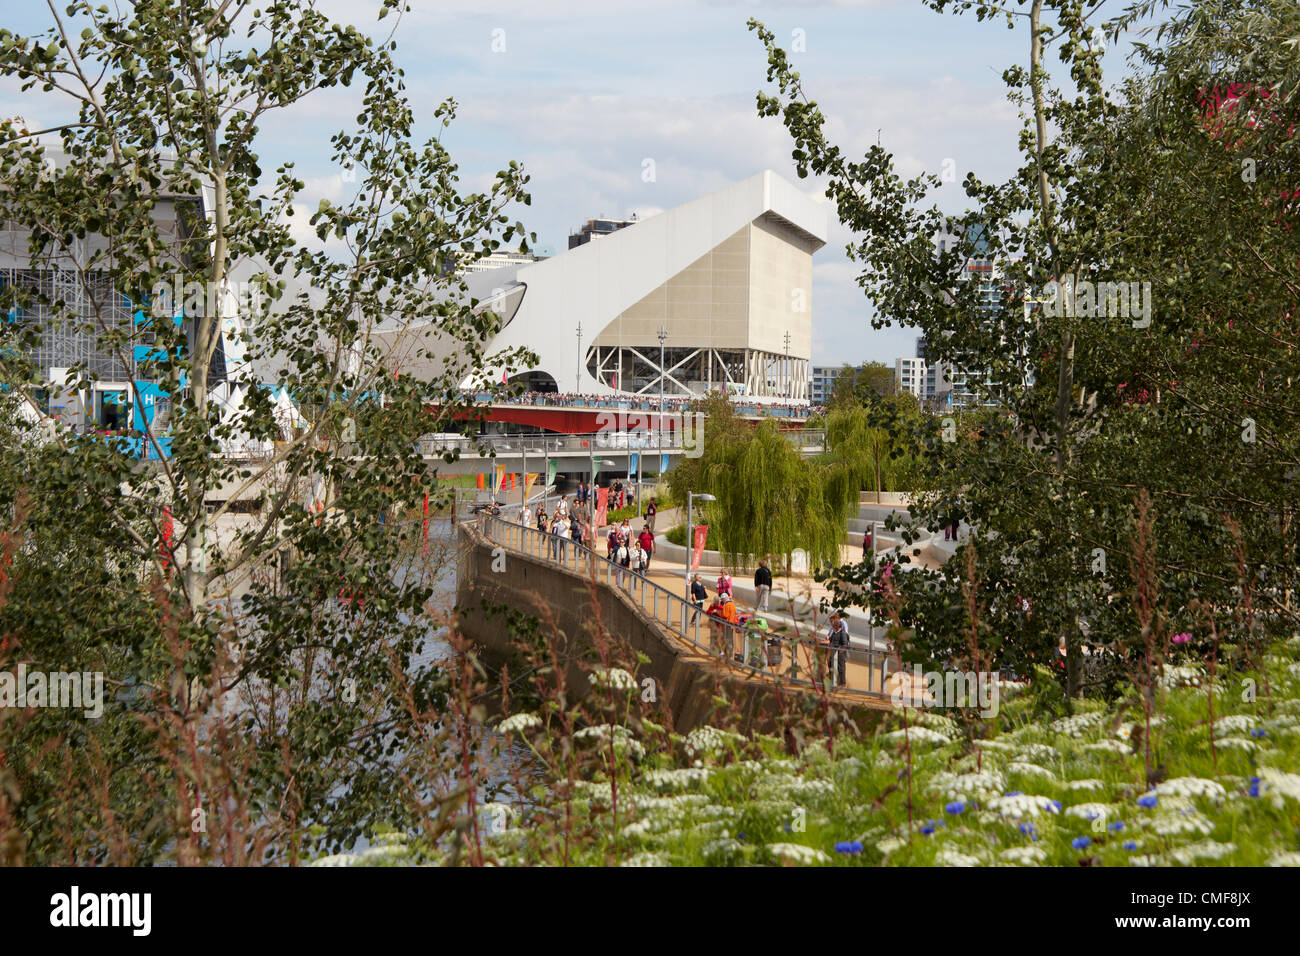 Vista al sur a lo largo del río Lea con Aquatics Centre en un día soleado en el Parque Olímpico, el sitio de los Juegos Olímpicos de Londres 2012, Stratford London E20, REINO UNIDO Foto de stock